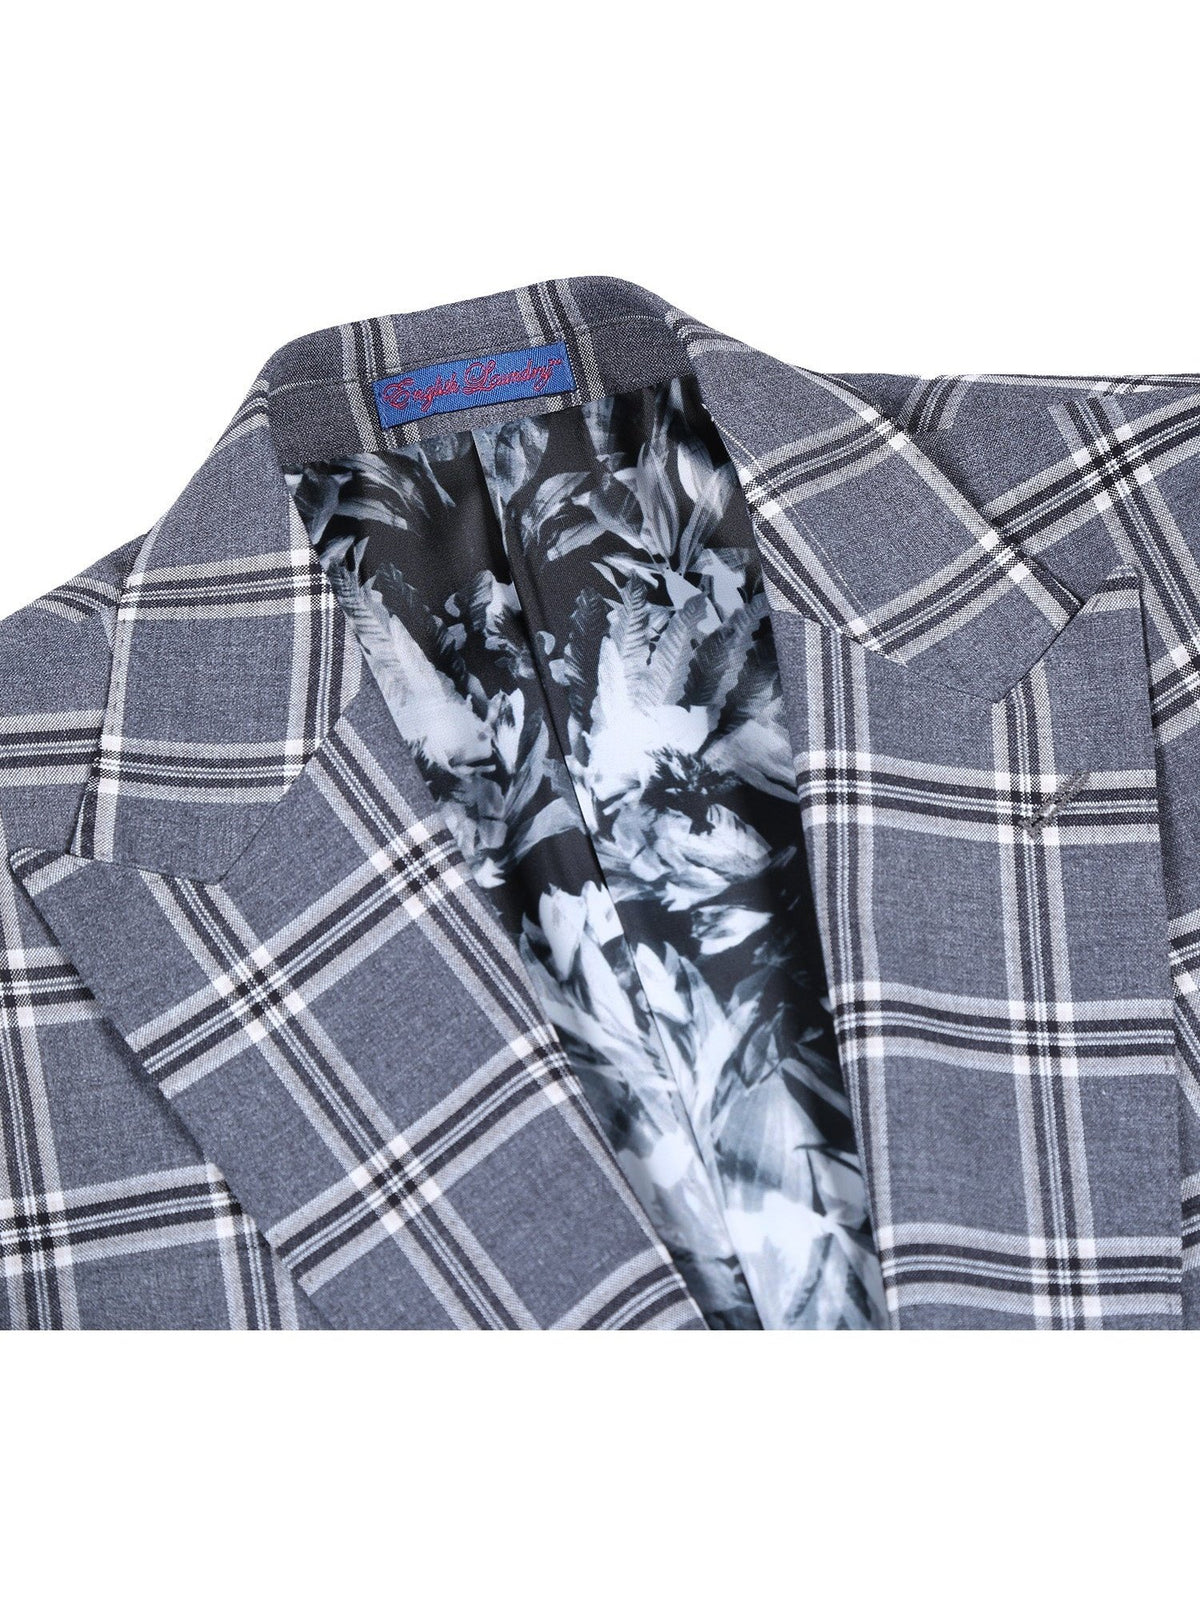 English Laundry Slim Fit Two Button Check Peak Lapel Suit